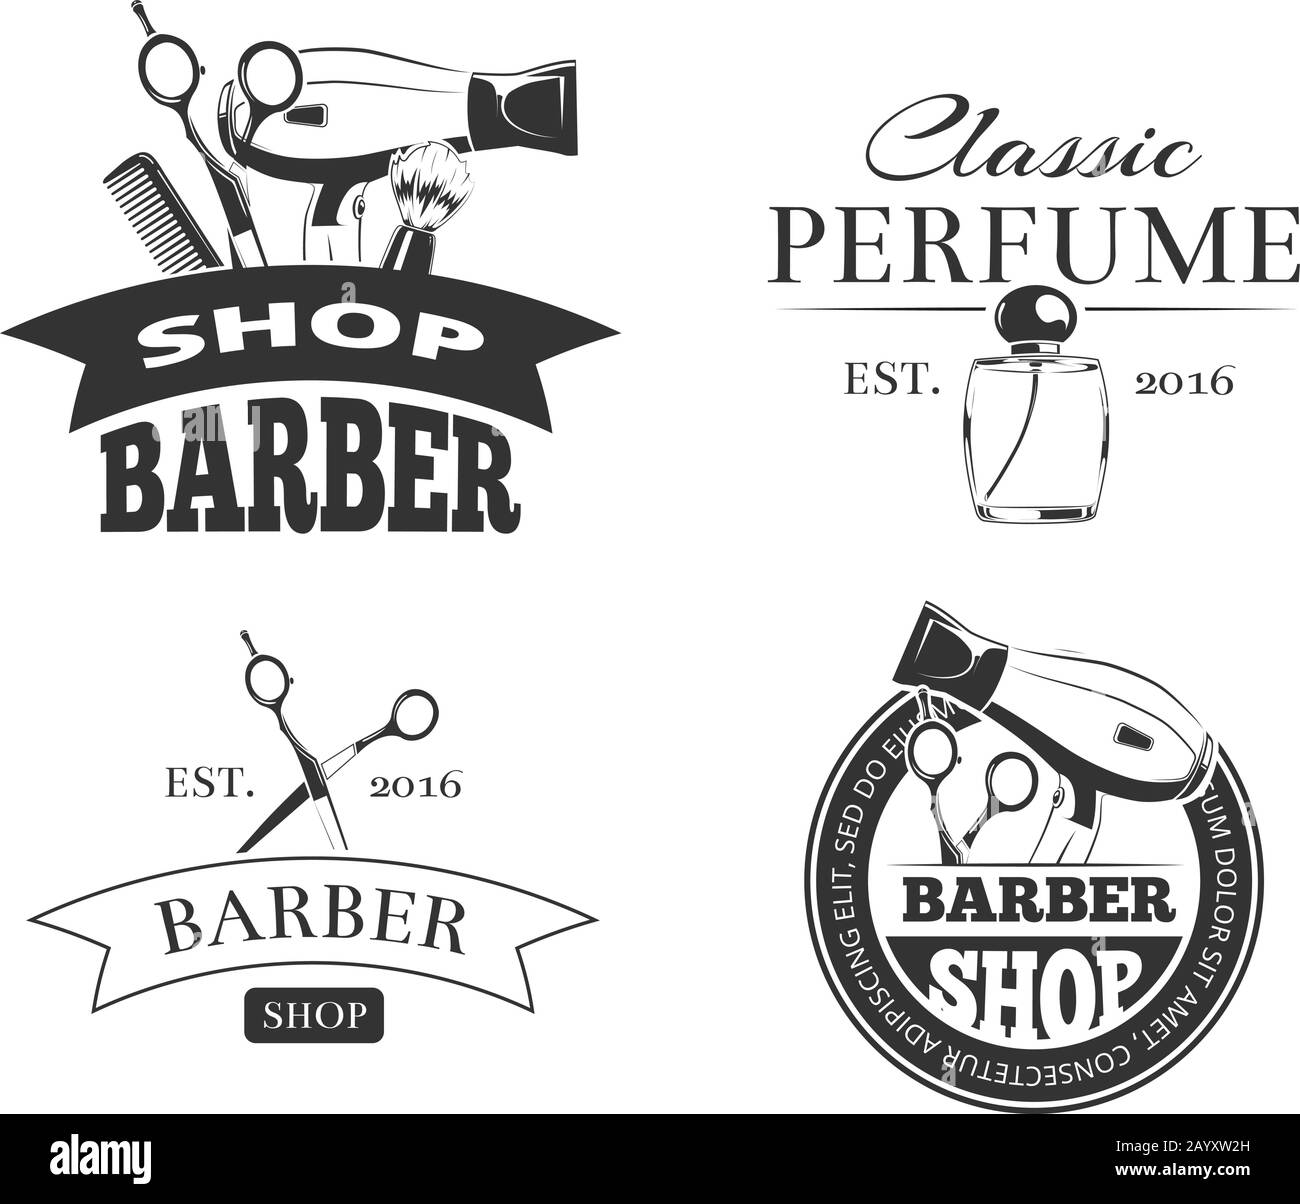 https://c8.alamy.com/comp/2AYXW2H/retro-barber-shop-vector-emblem-or-logo-set-barbershop-vintage-labels-with-typography-design-elements-2AYXW2H.jpg